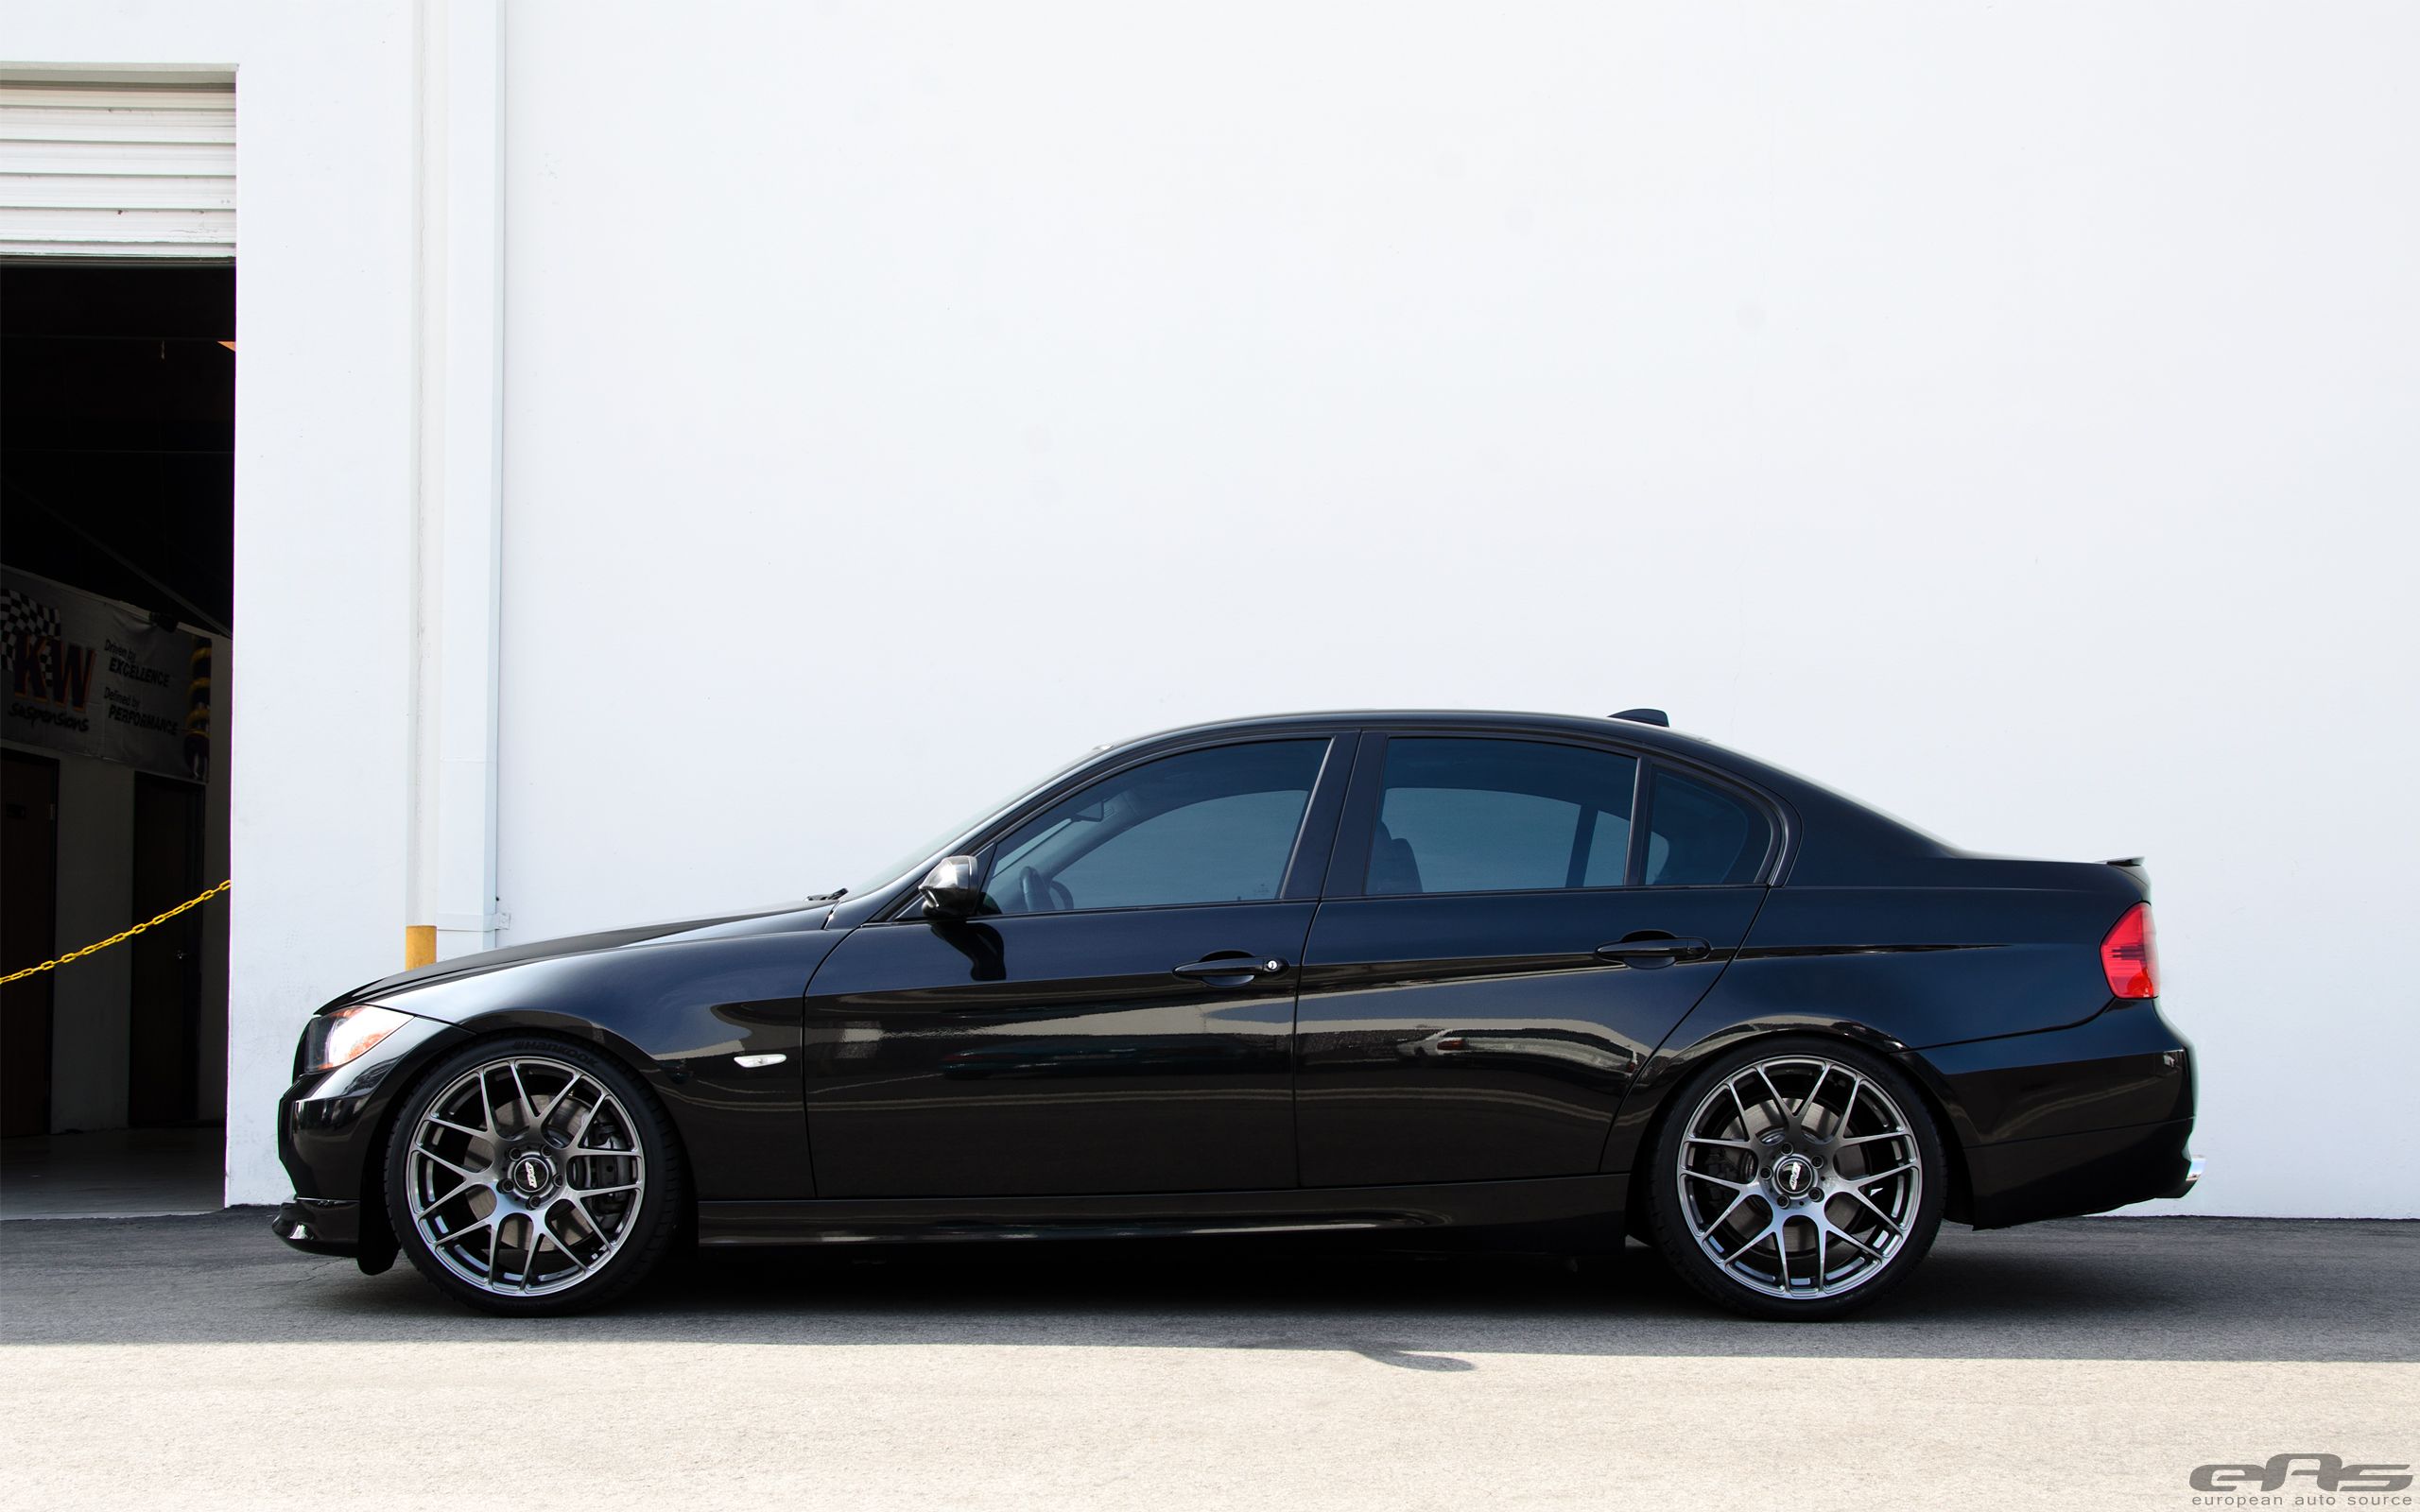 BMW 335i 2015 White - image #268